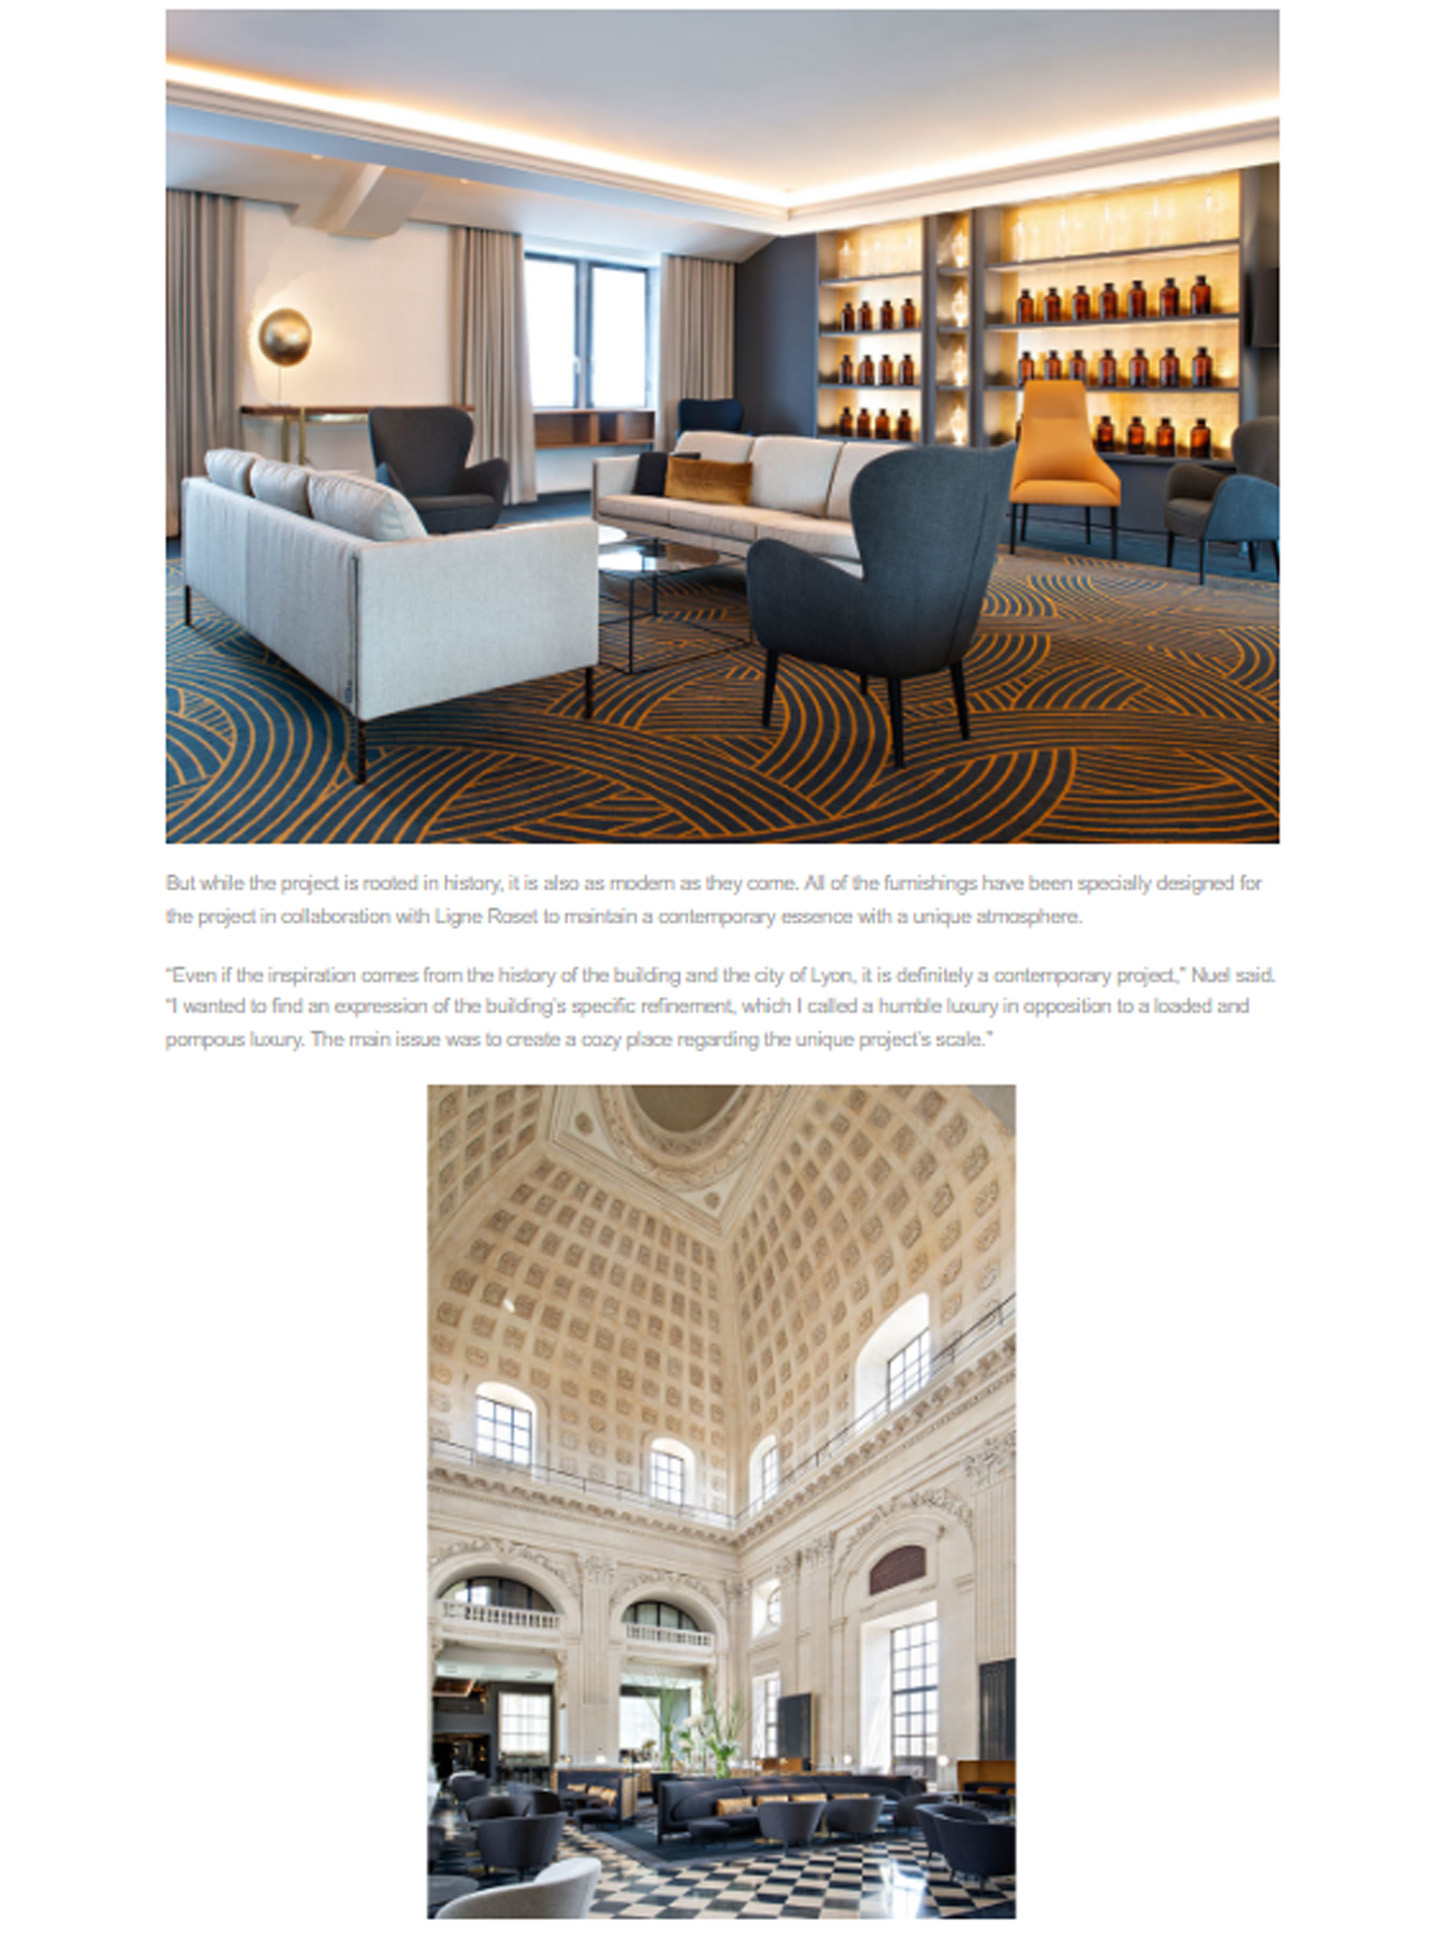 Article sur l'InterContinental Lyon Hotel Dieu réalisé par le studio jean-Philippe Nuel dans le magazine Inspire design, nouvel hotel de luxe, architecture d'intérieur de luxe, patrimoine historique